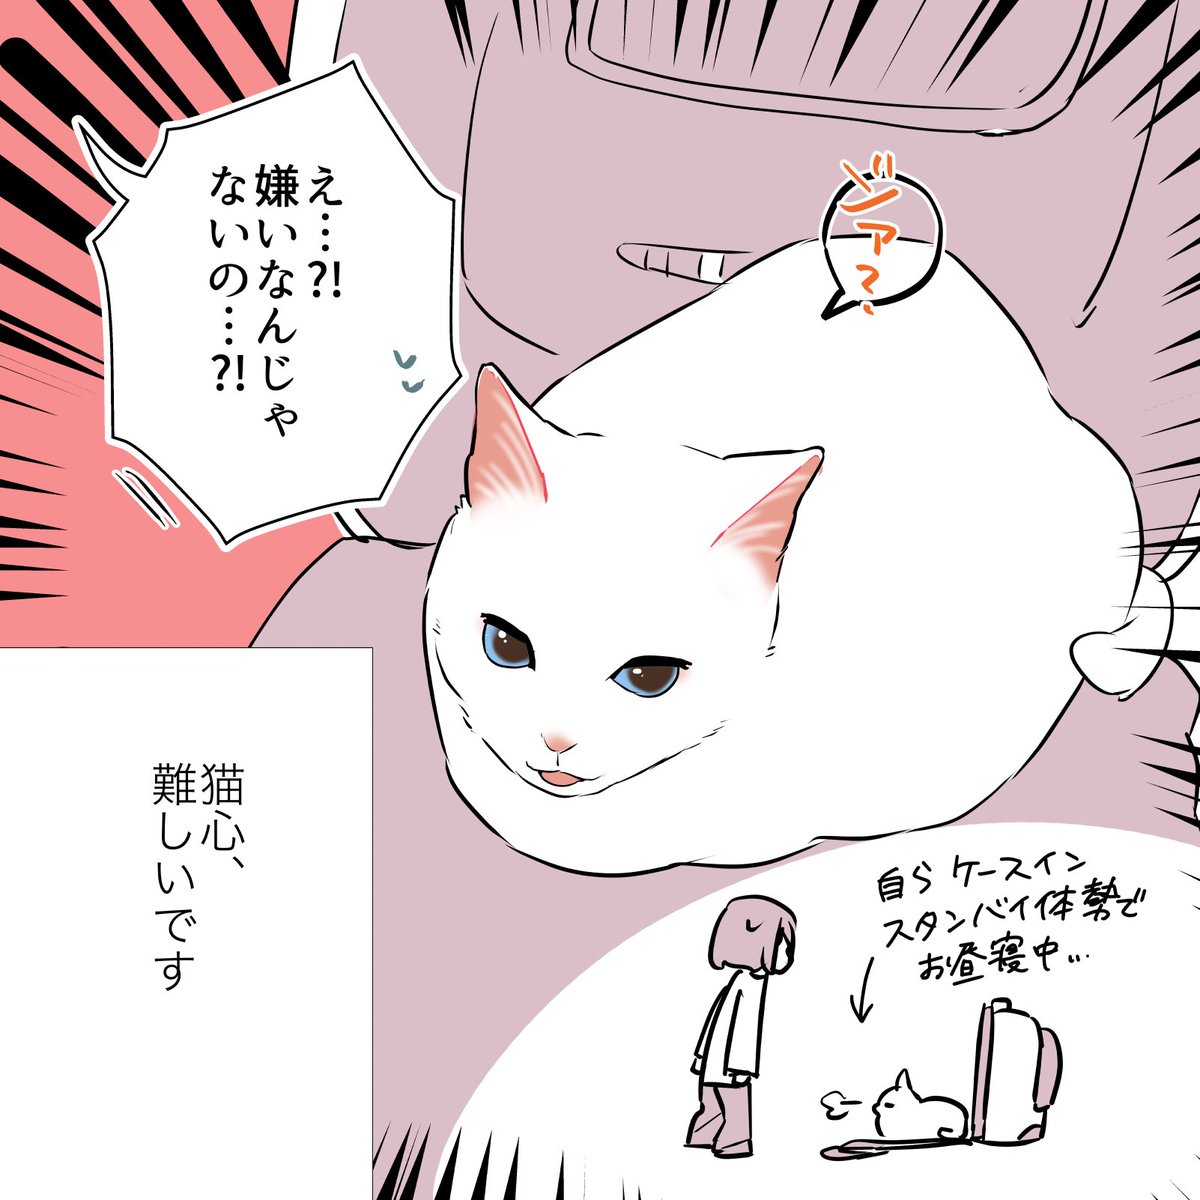 猫の心、難し〜〜〜〜!!!!!って話(2/2) #漫画が読めるハッシュタグ #愛されたがりの白猫ミコさん